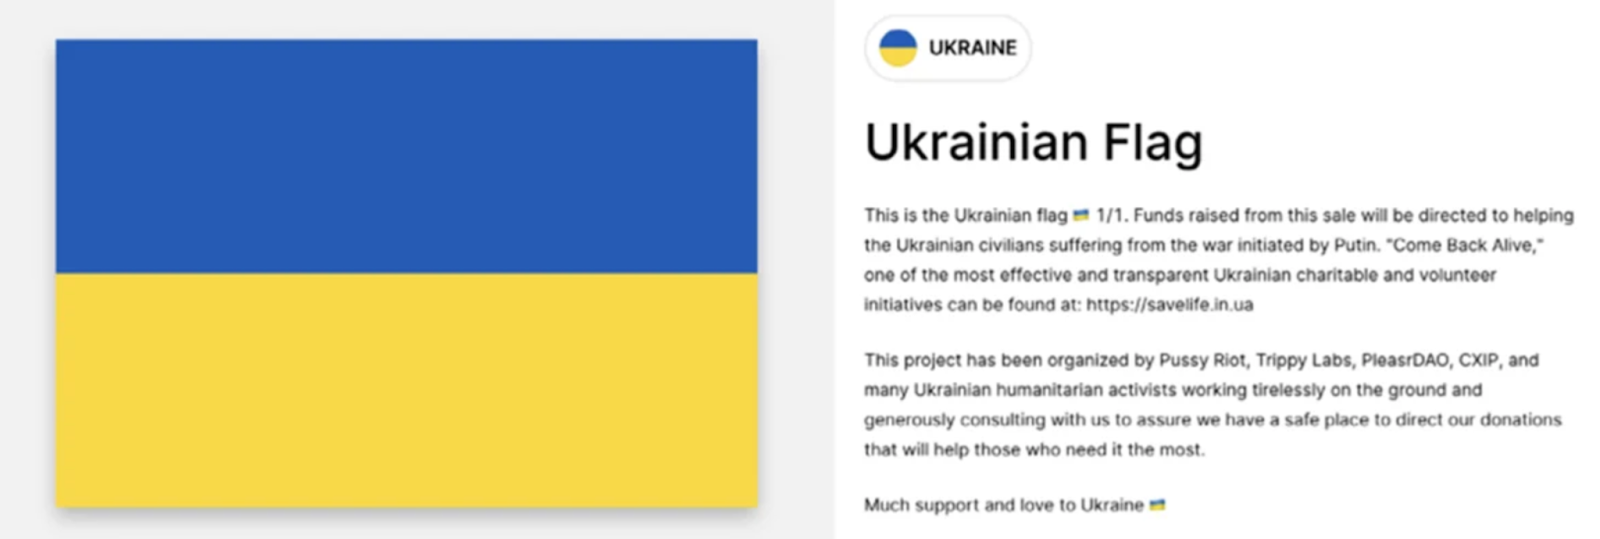 کمک های مالی ارزهای دیجیتال به اوکراین به سرعت افزایش یافت، اما این کمک ها هنوز در حد واقعی بود |  نظر - 2